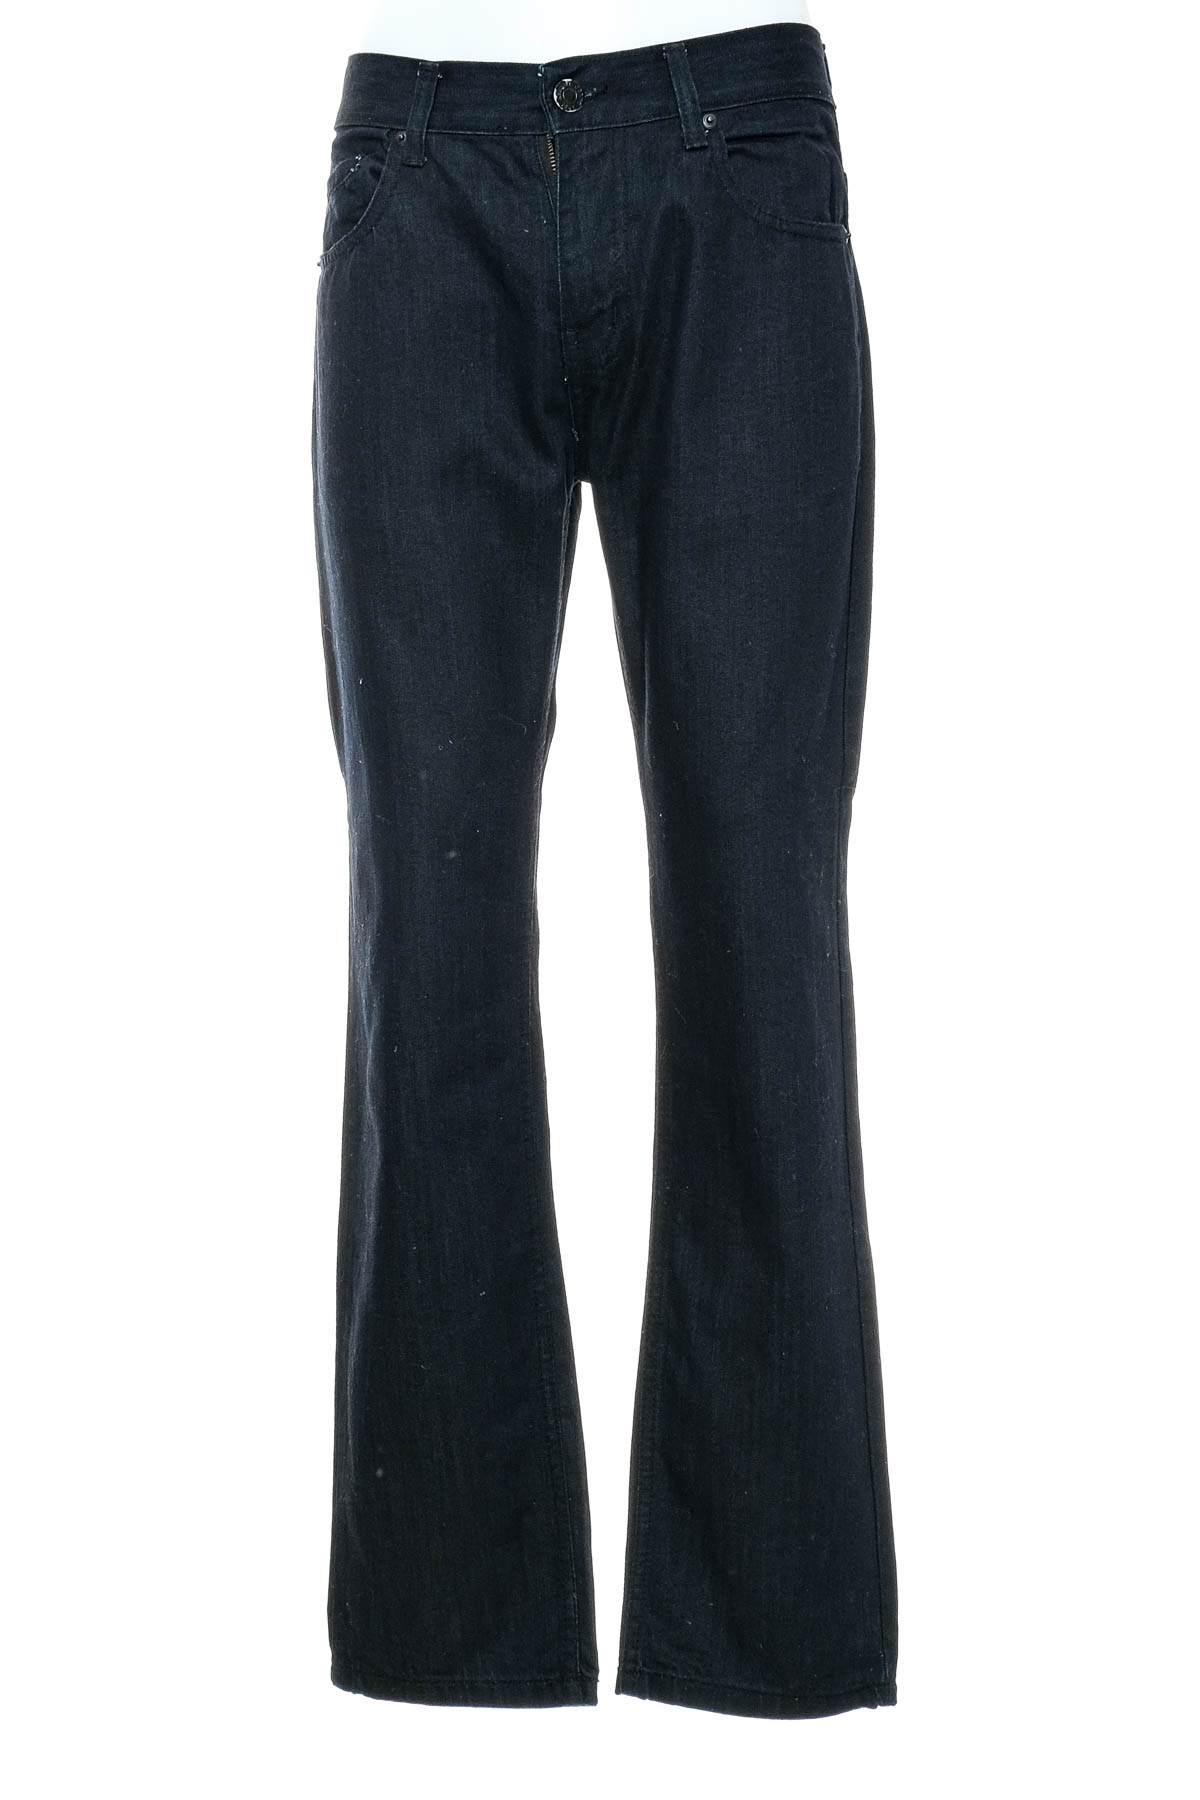 Ανδρικά τζιν - Armani Jeans - 0